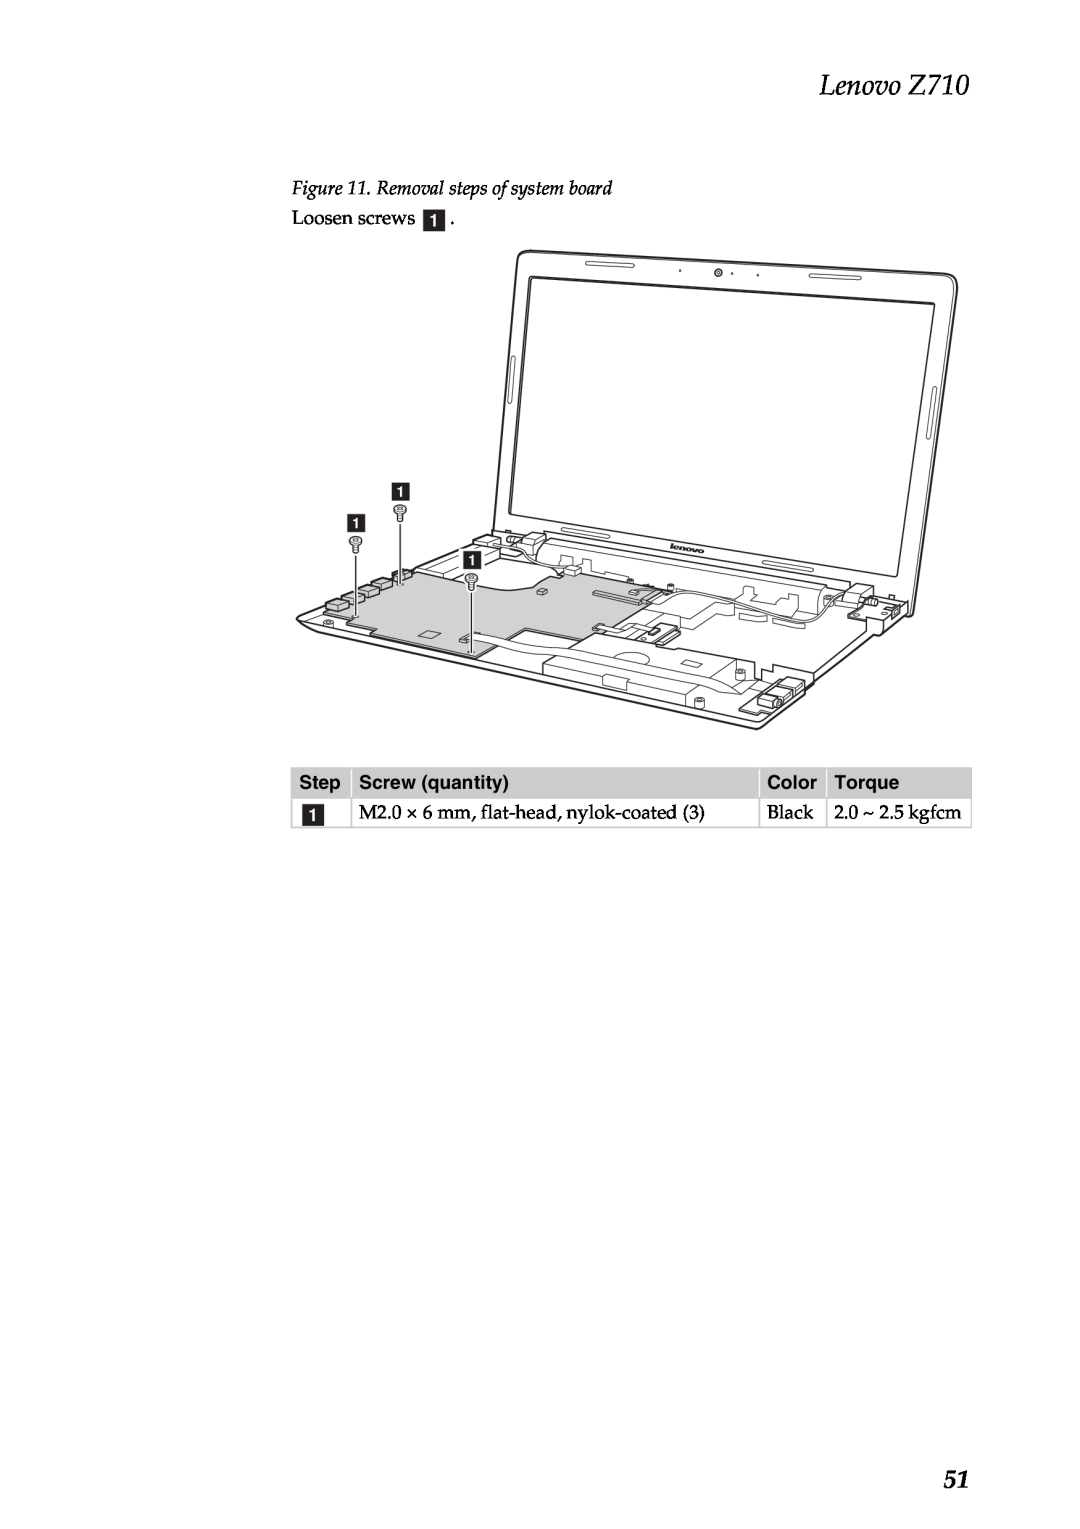 Lenovo manual Removal steps of system board, Lenovo Z710, a a a 